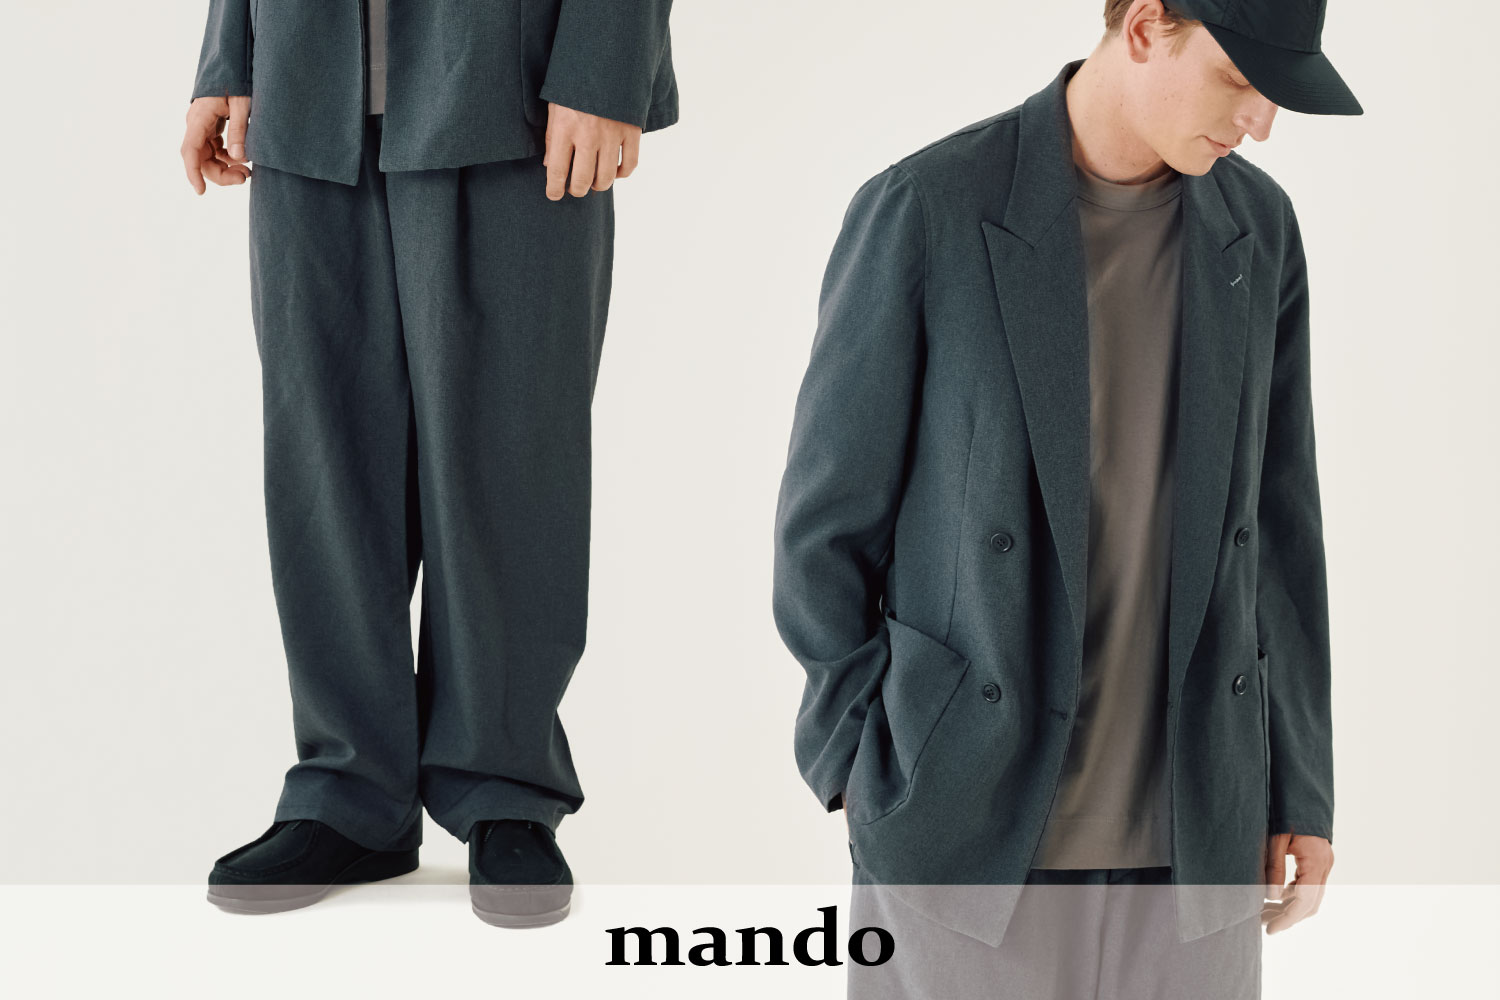 mando - Exclusive Model